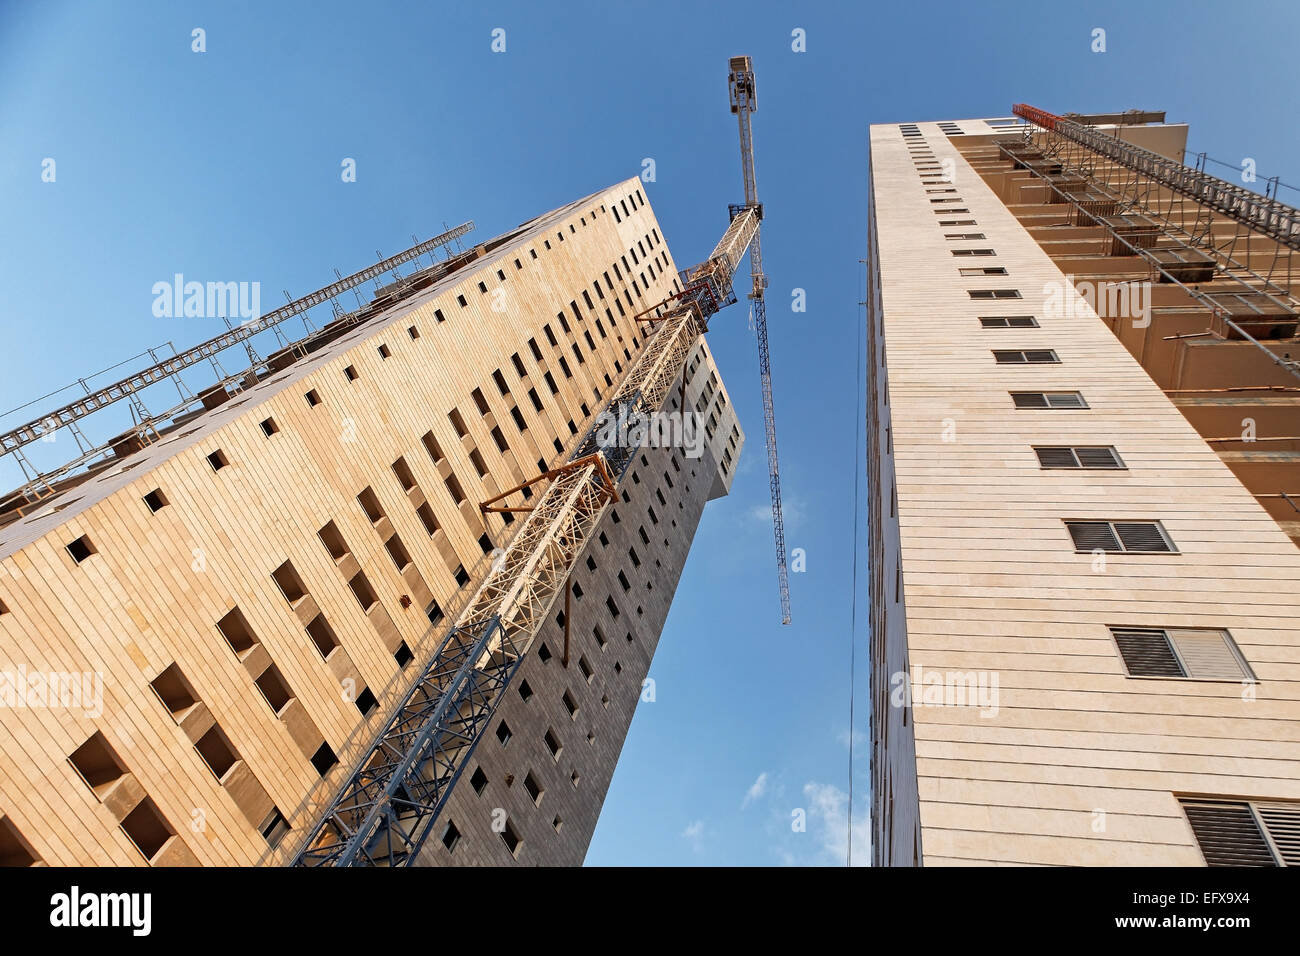 La construction des immeubles de grande hauteur, une entreprise rentable Banque D'Images